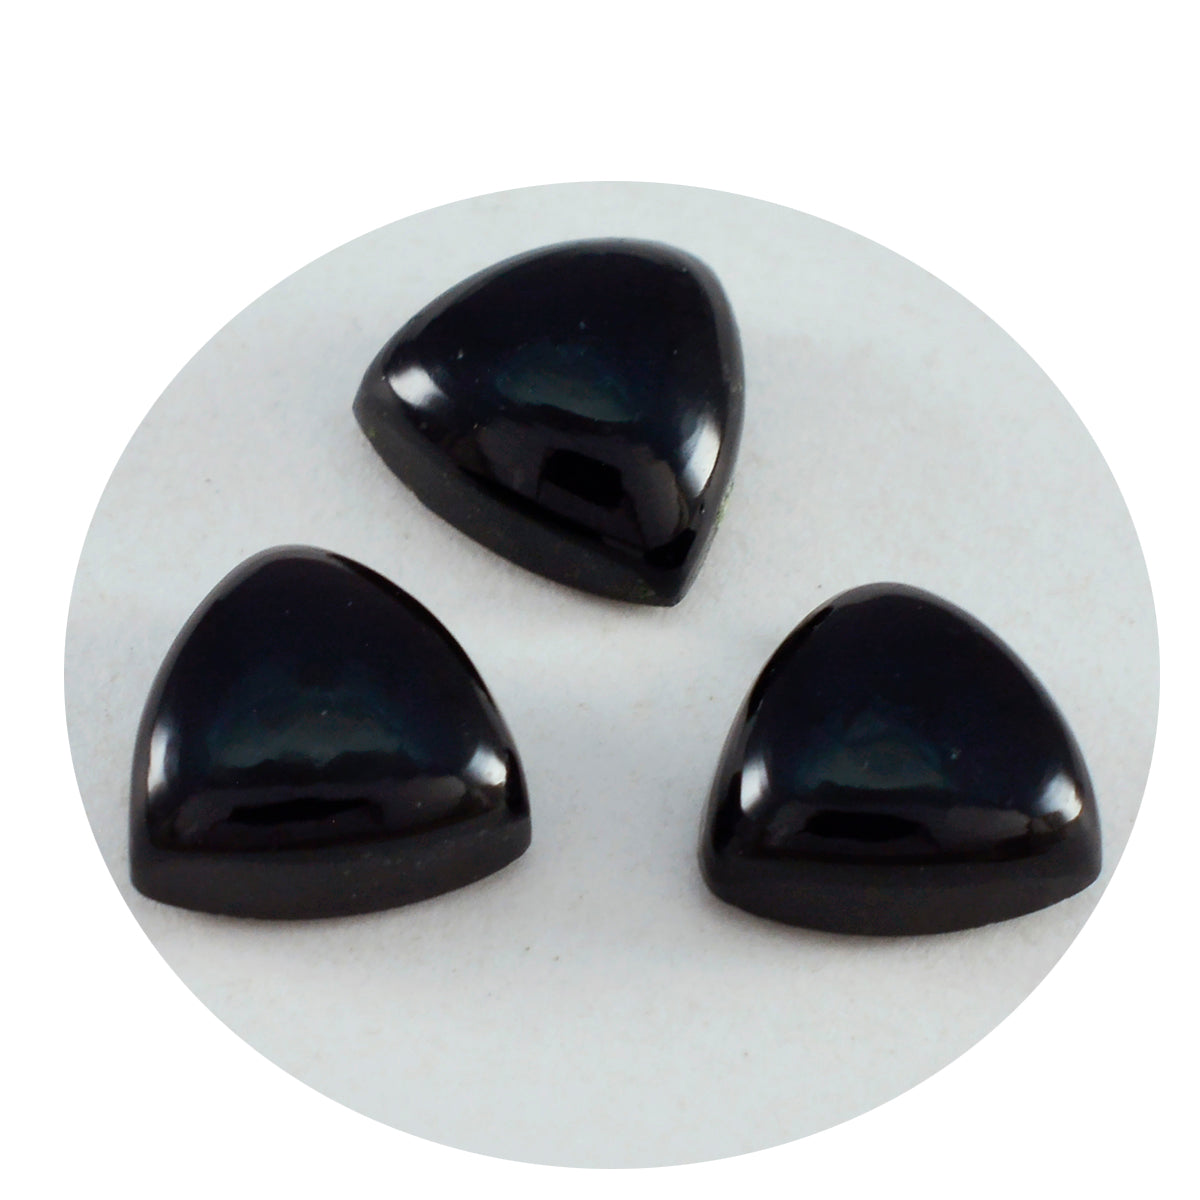 Riyogems 1 Stück schwarzer Onyx-Cabochon, 12 x 12 mm, Billionenform, gute Qualität, lose Edelsteine